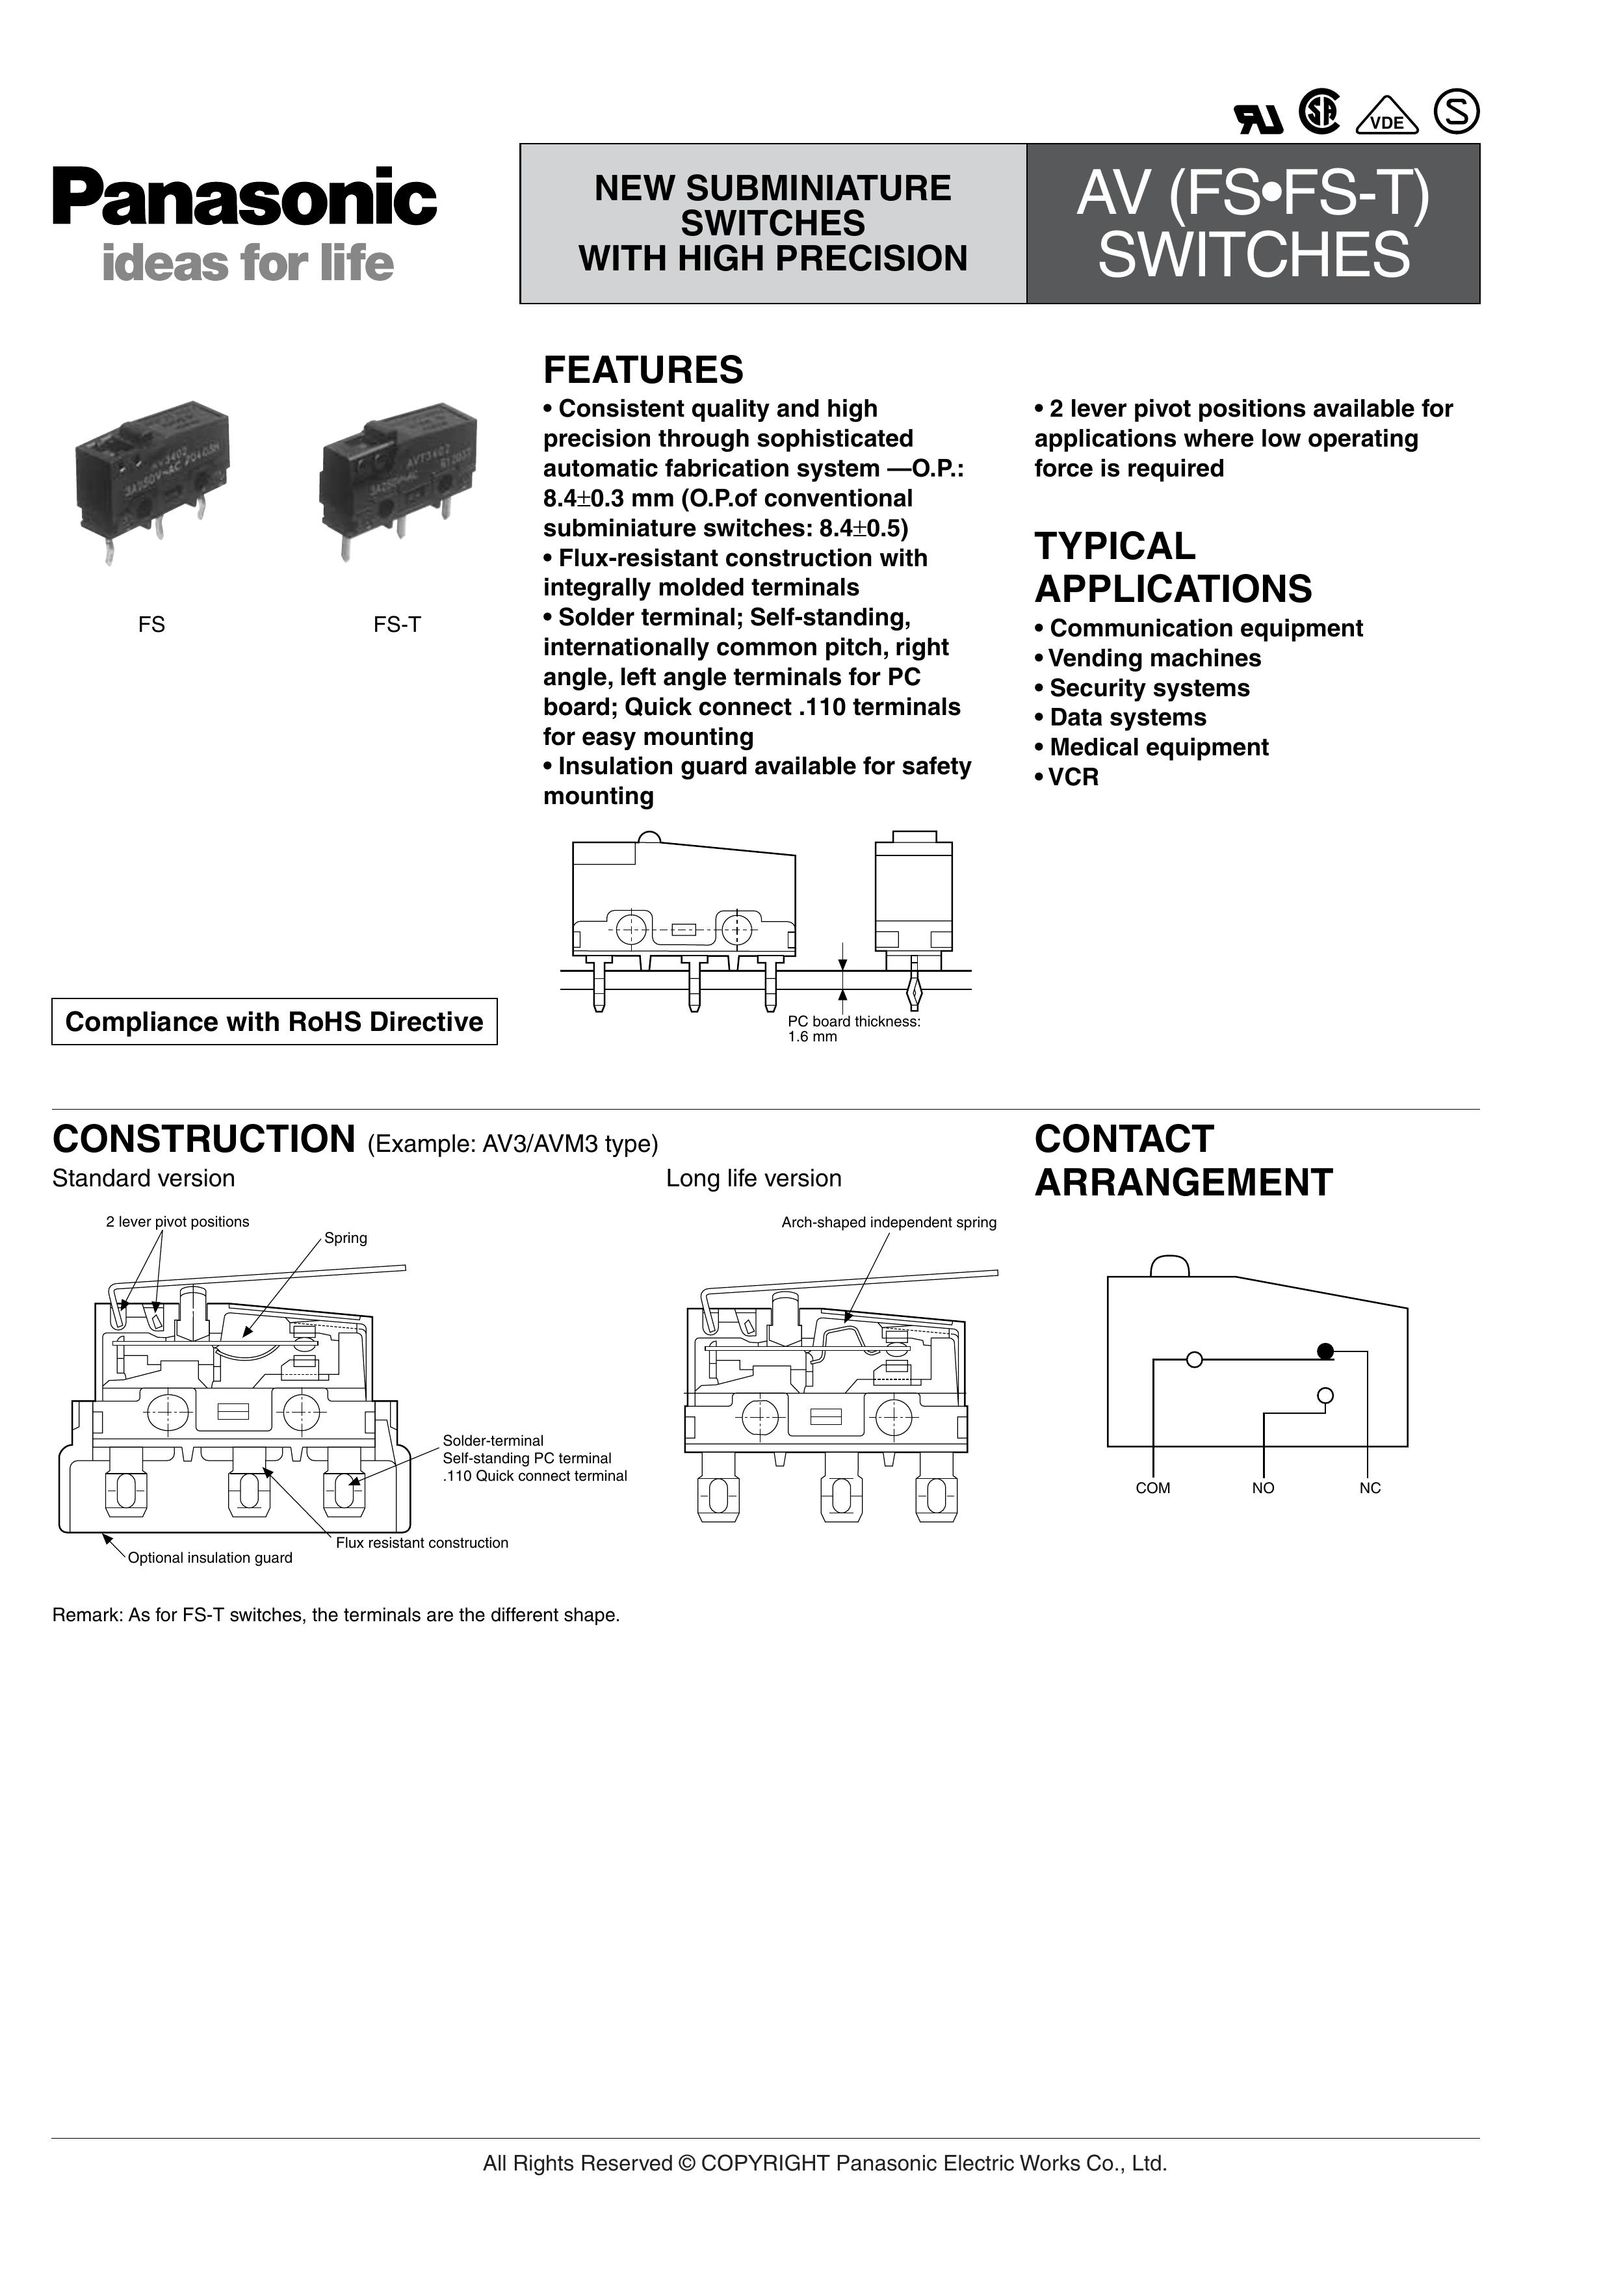 Panasonic AV(FS-FS-T) Switch User Manual